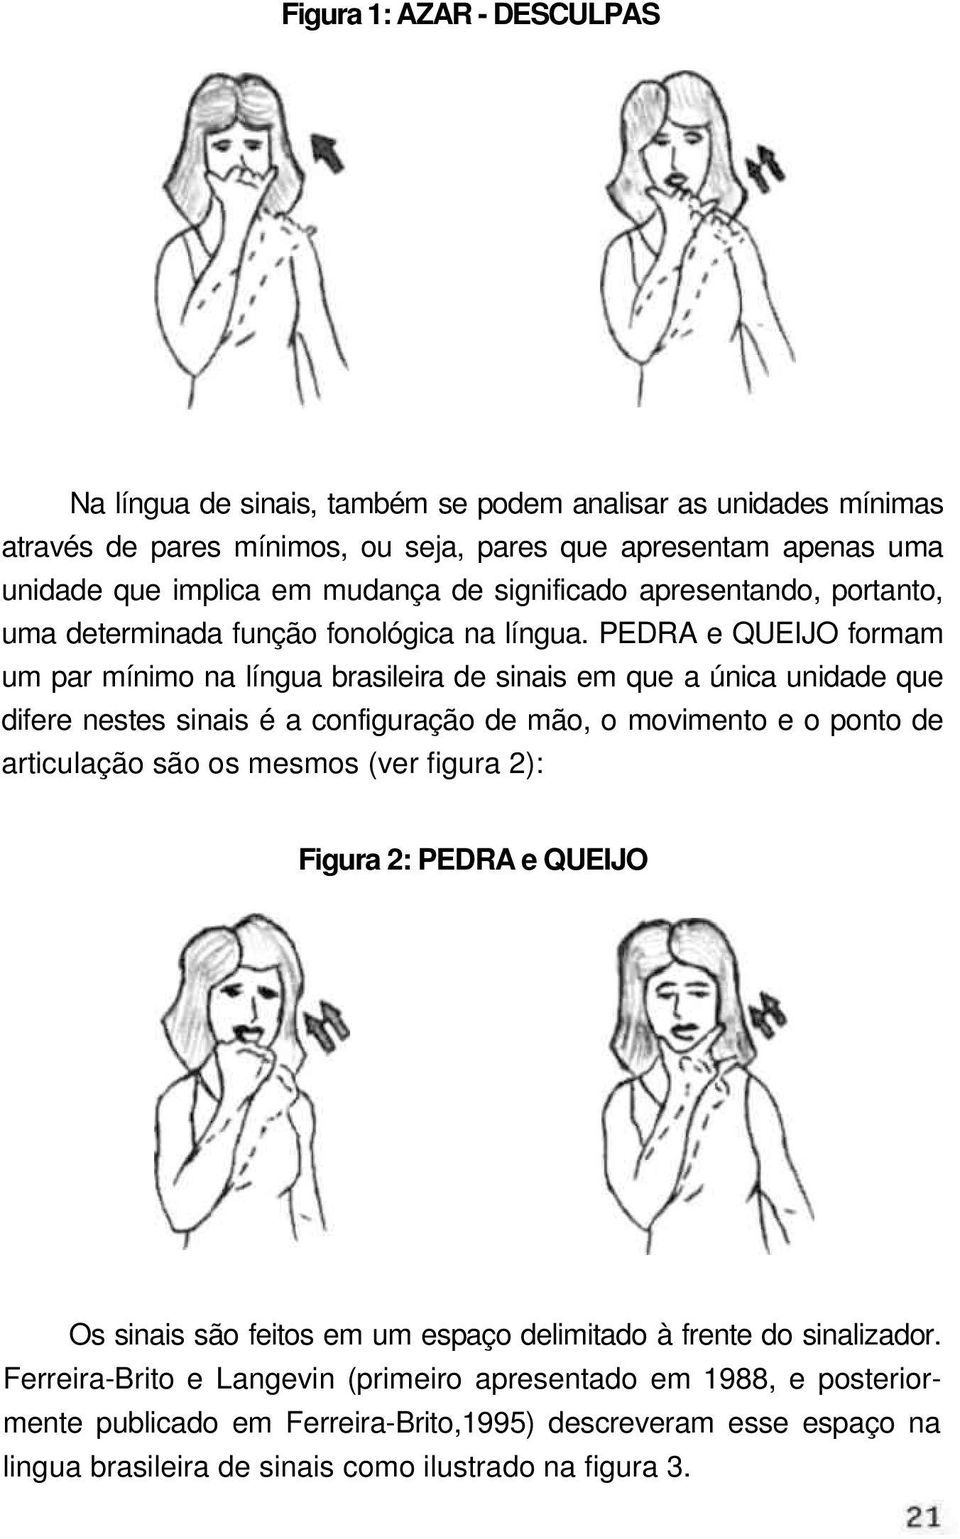 PEDRA e QUEIJO formam um par mínimo na língua brasileira de sinais em que a única unidade que difere nestes sinais é a configuração de mão, o movimento e o ponto de articulação são os mesmos